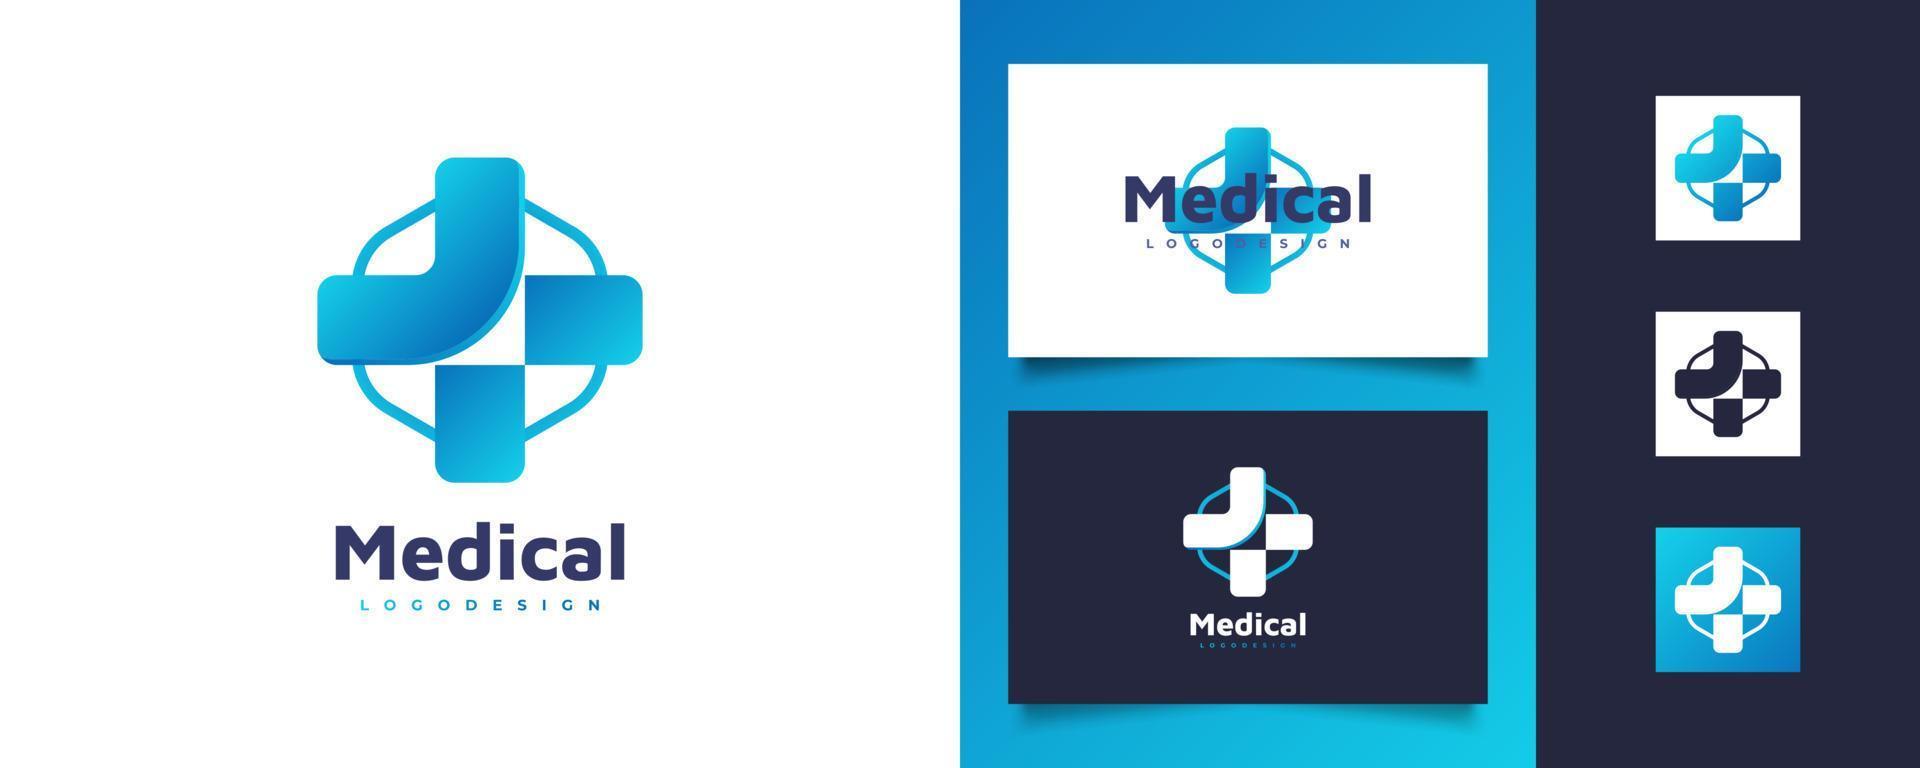 logotipo de cruz azul para la identidad del logotipo del hospital, farmacia, farmacia o clínica. cruz con logotipo en forma de hexágono para negocios de atención médica vector